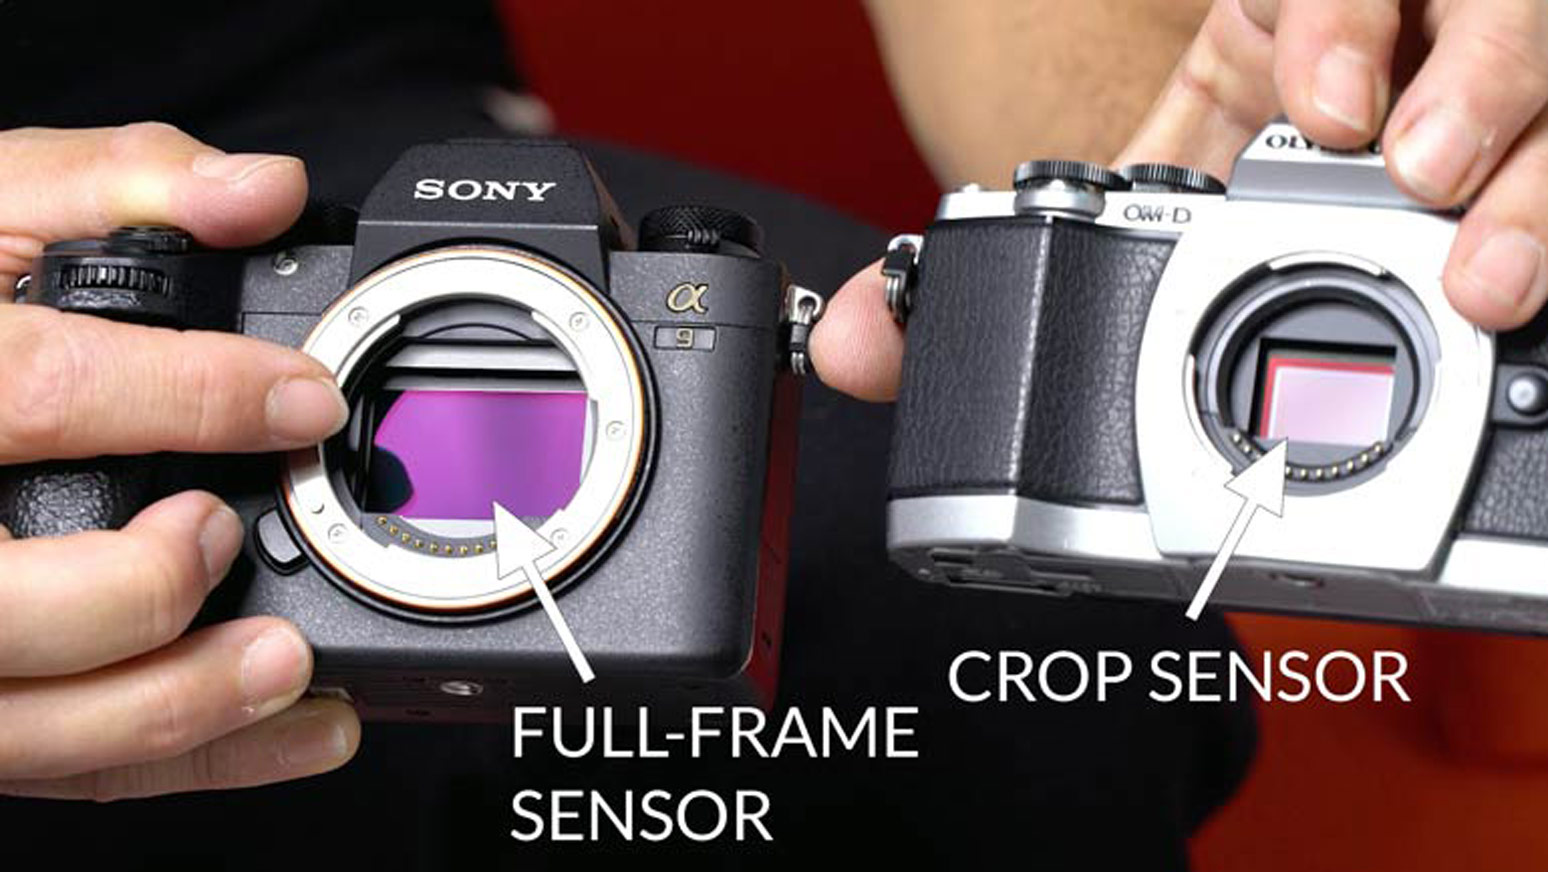 Full-frame sensor vs crop sensor